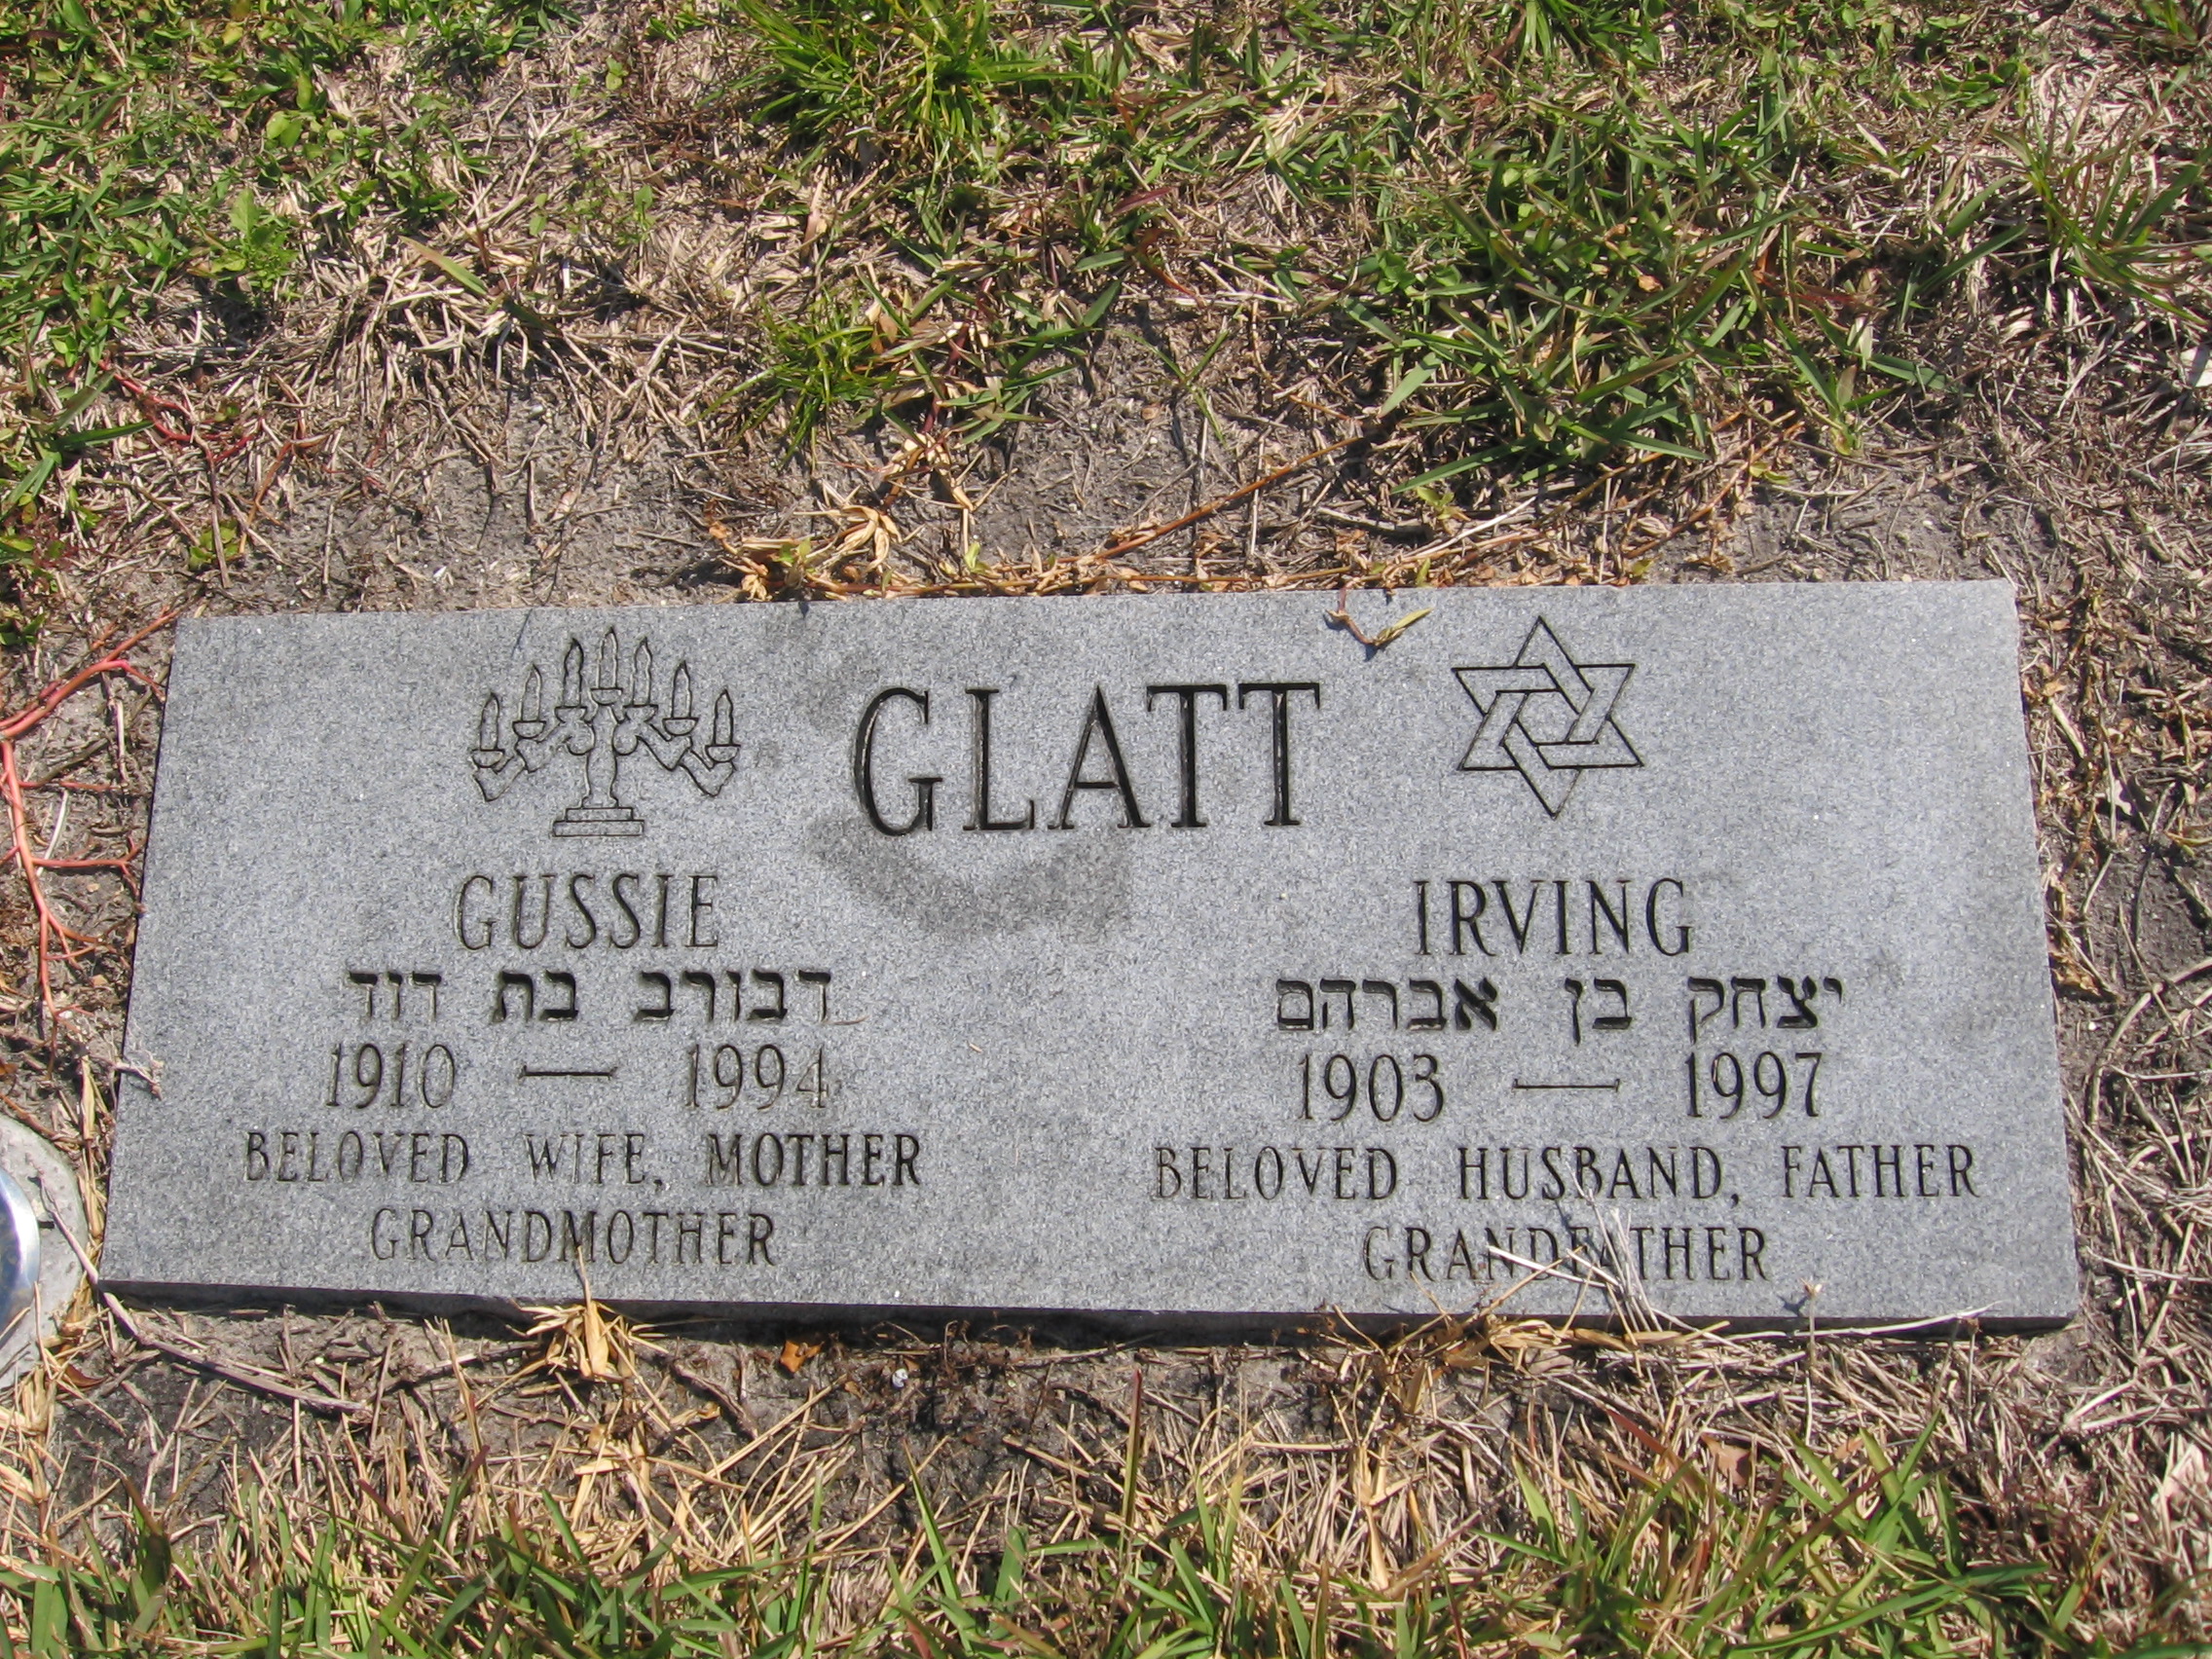 Gussie Glatt